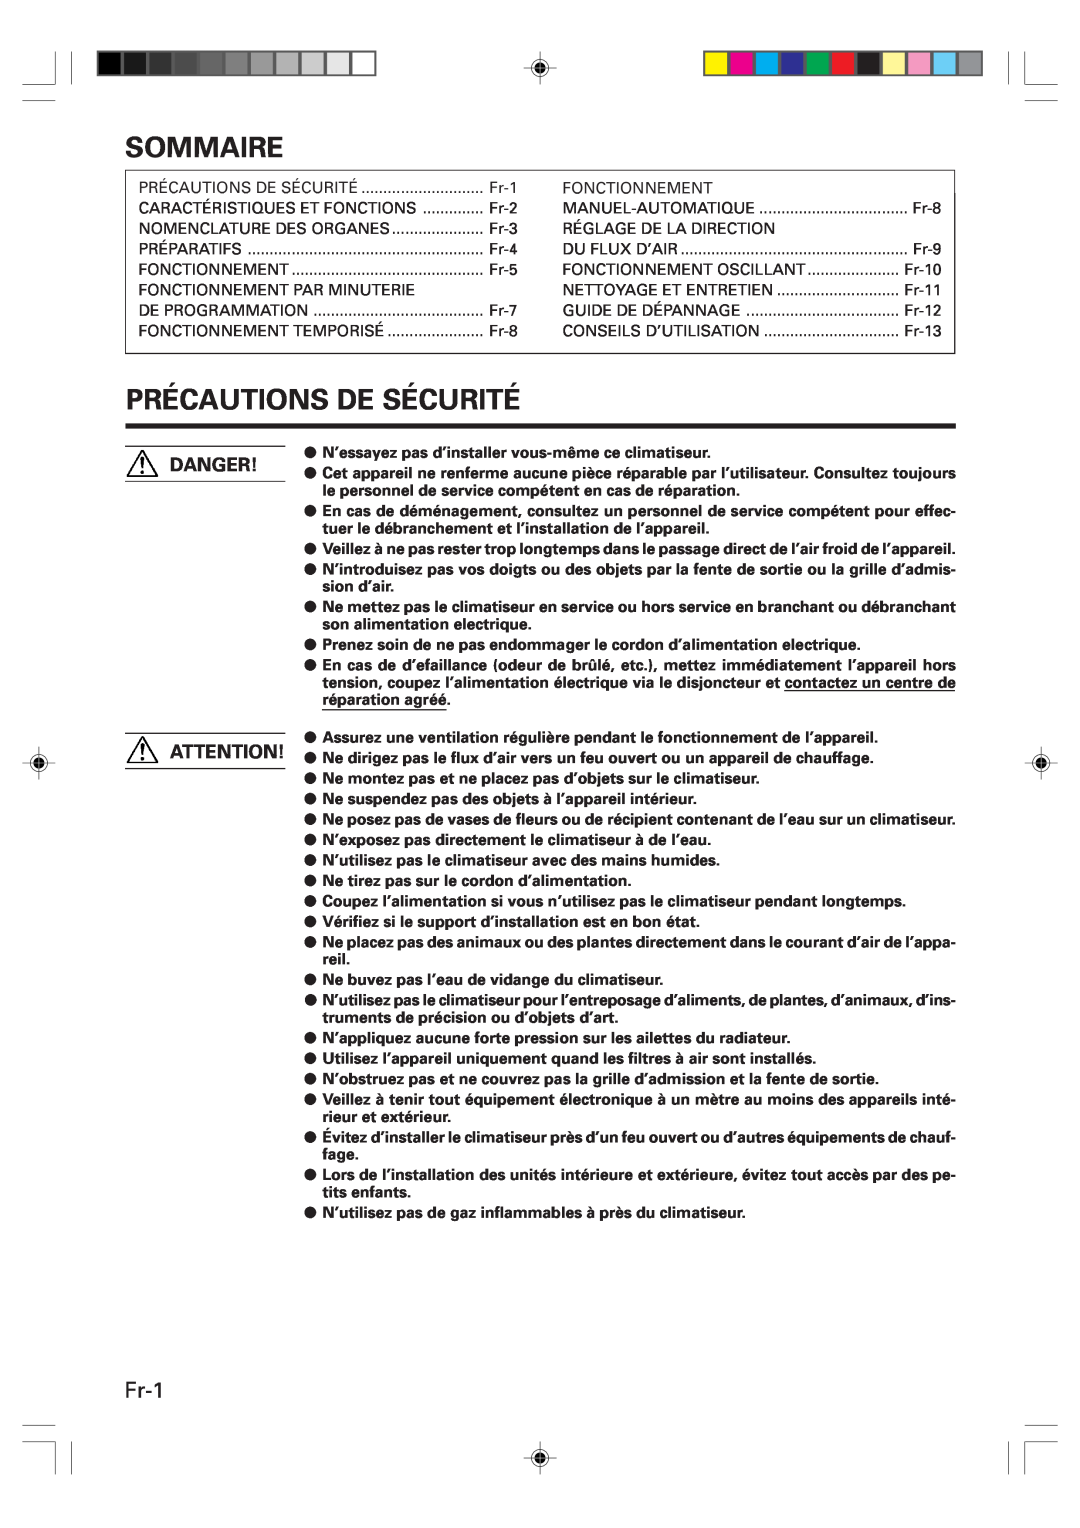 Friedrich MR09Y1F, MR12Y1F operation manual Sommaire, Précautions De Sécurité, Fr-1, Danger 